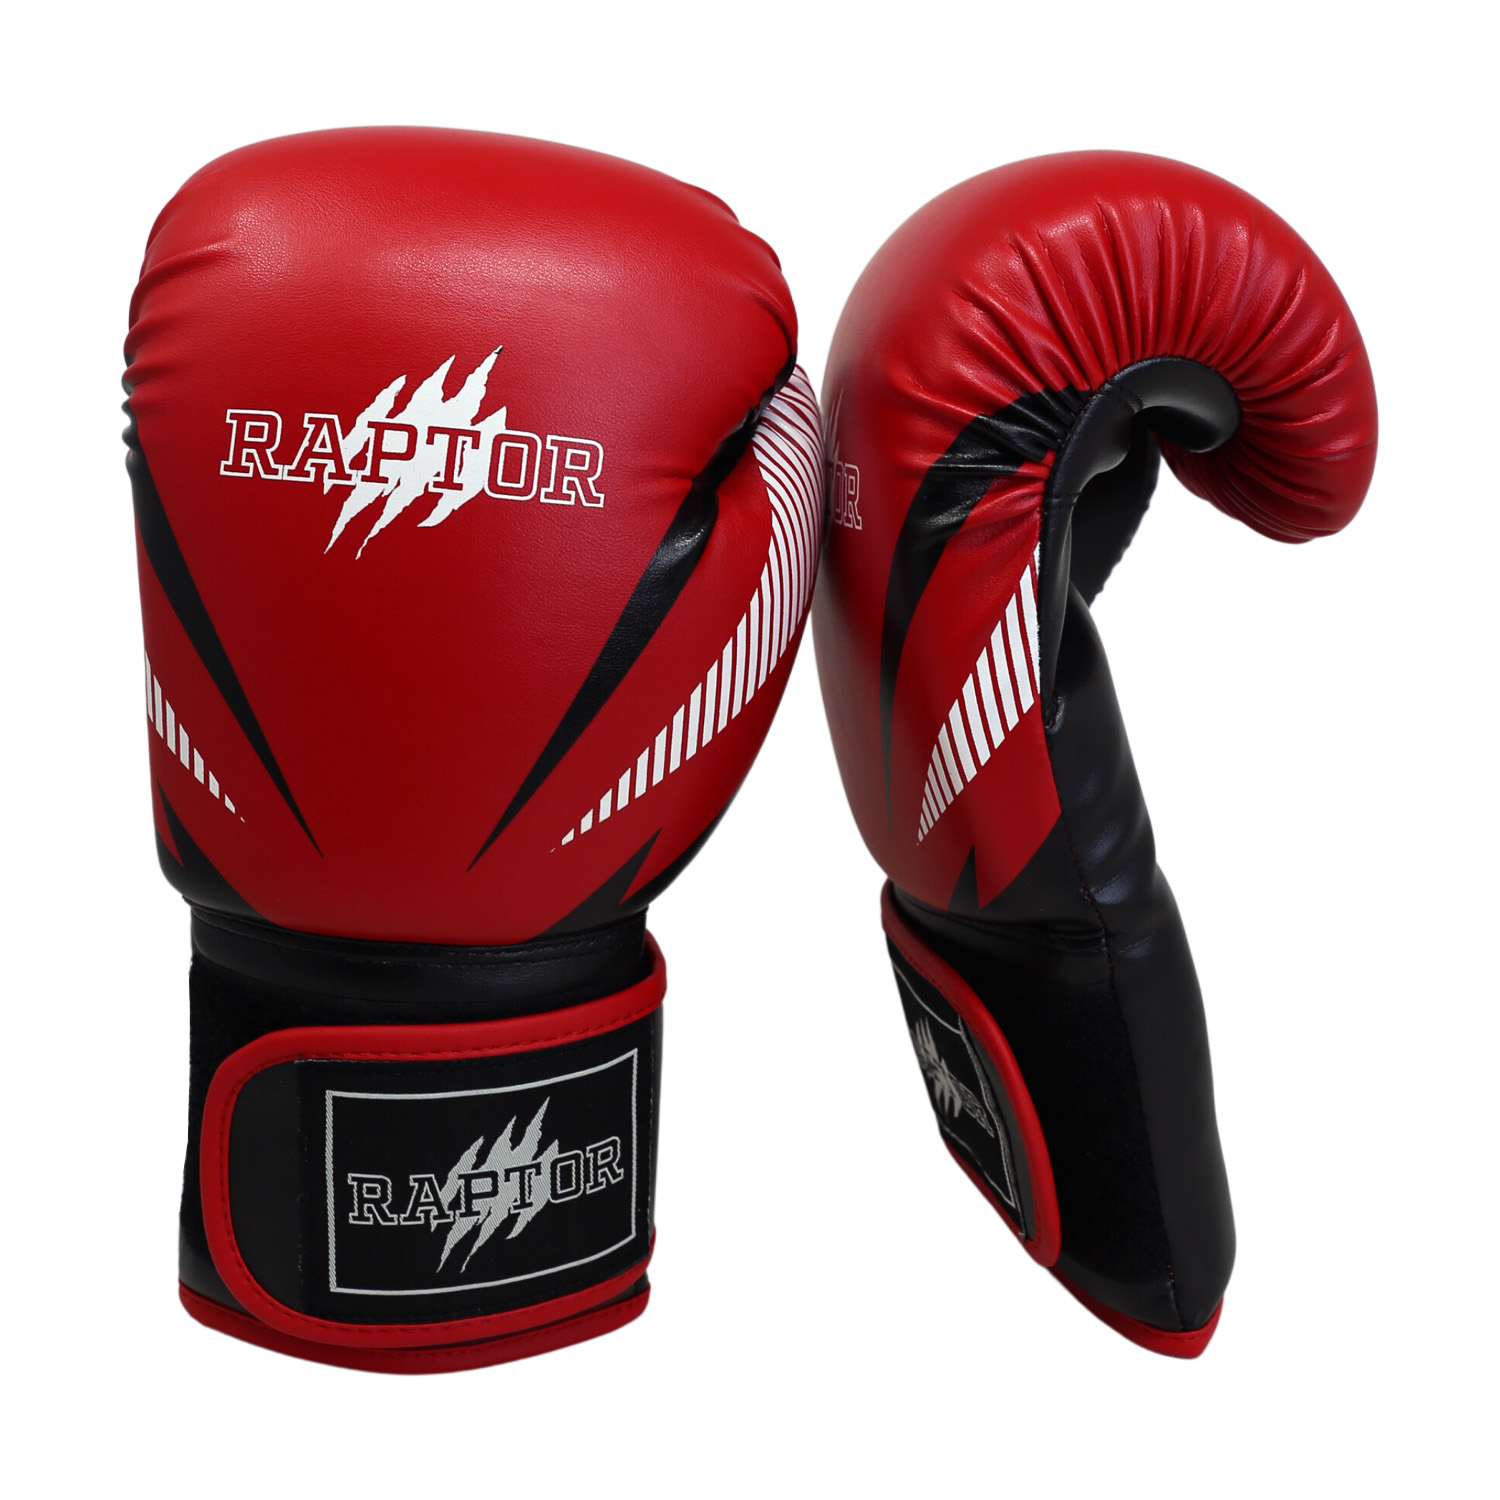 Raptor Boxing Gloves - Red